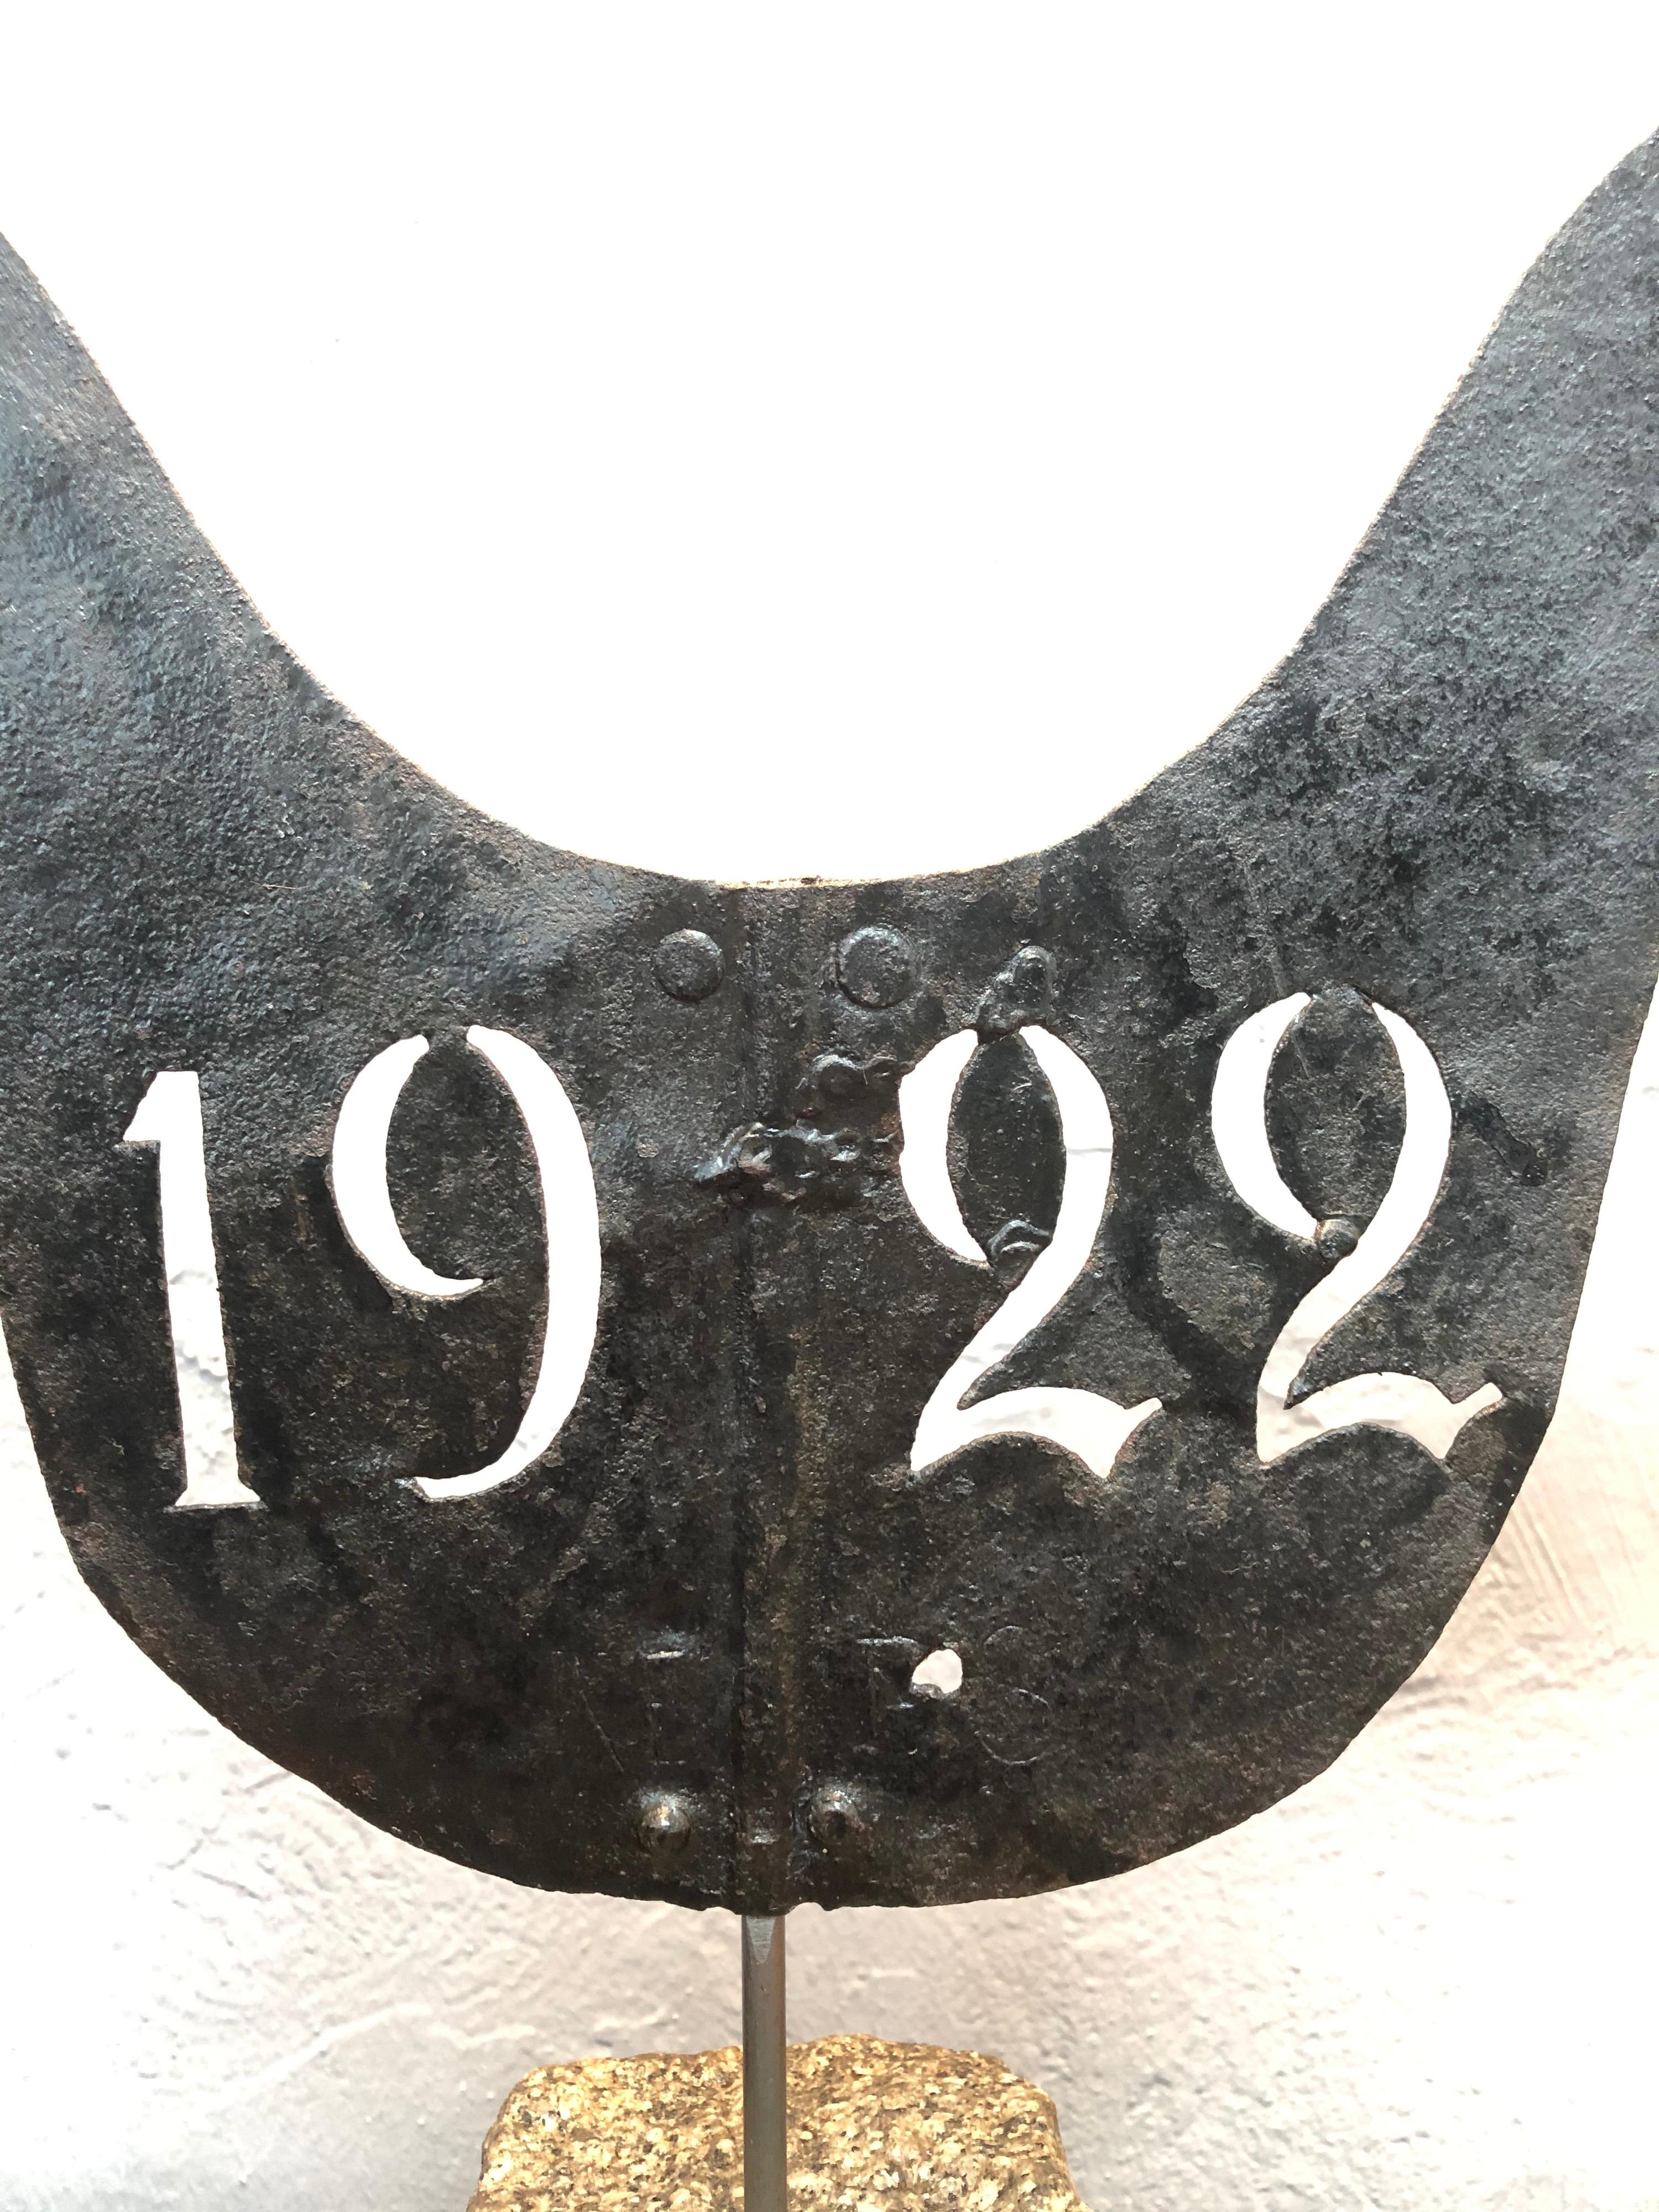 Eine sehr dekorative antike dänische Wetterfahne in Form eines Hahns. 
Hergestellt aus Stahlblech und datiert 1922. 
Die Oberfläche weist eine schöne Patina auf und ist auf einem Granitset montiert.